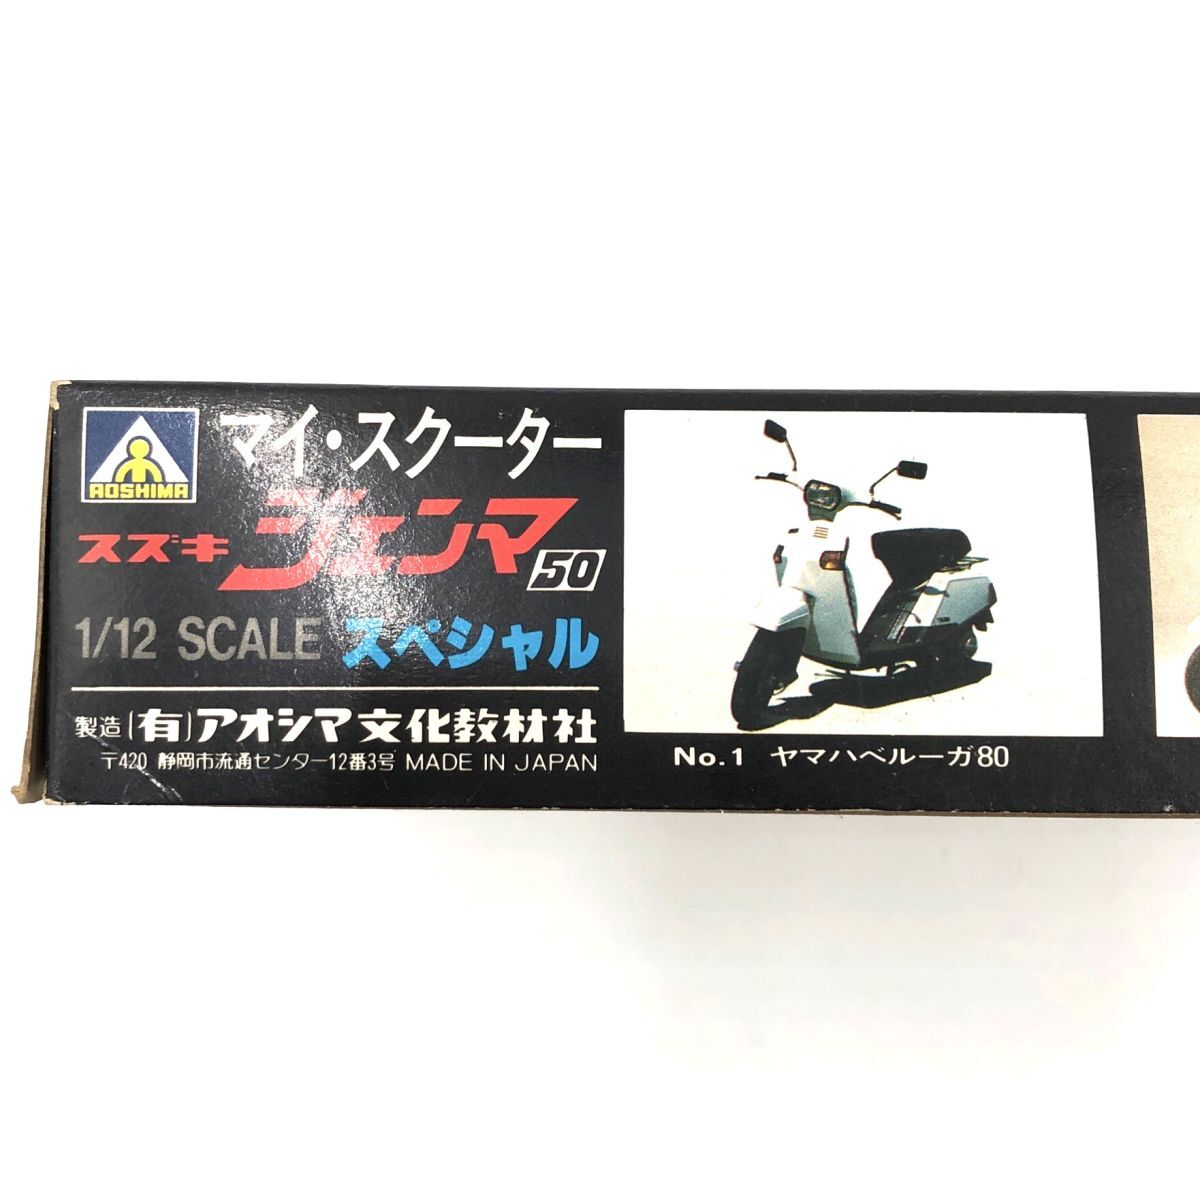  Suzuki Gemma 50 специальный AOSHIMA Aoshima пластиковая модель 1/12 [310-055#000]